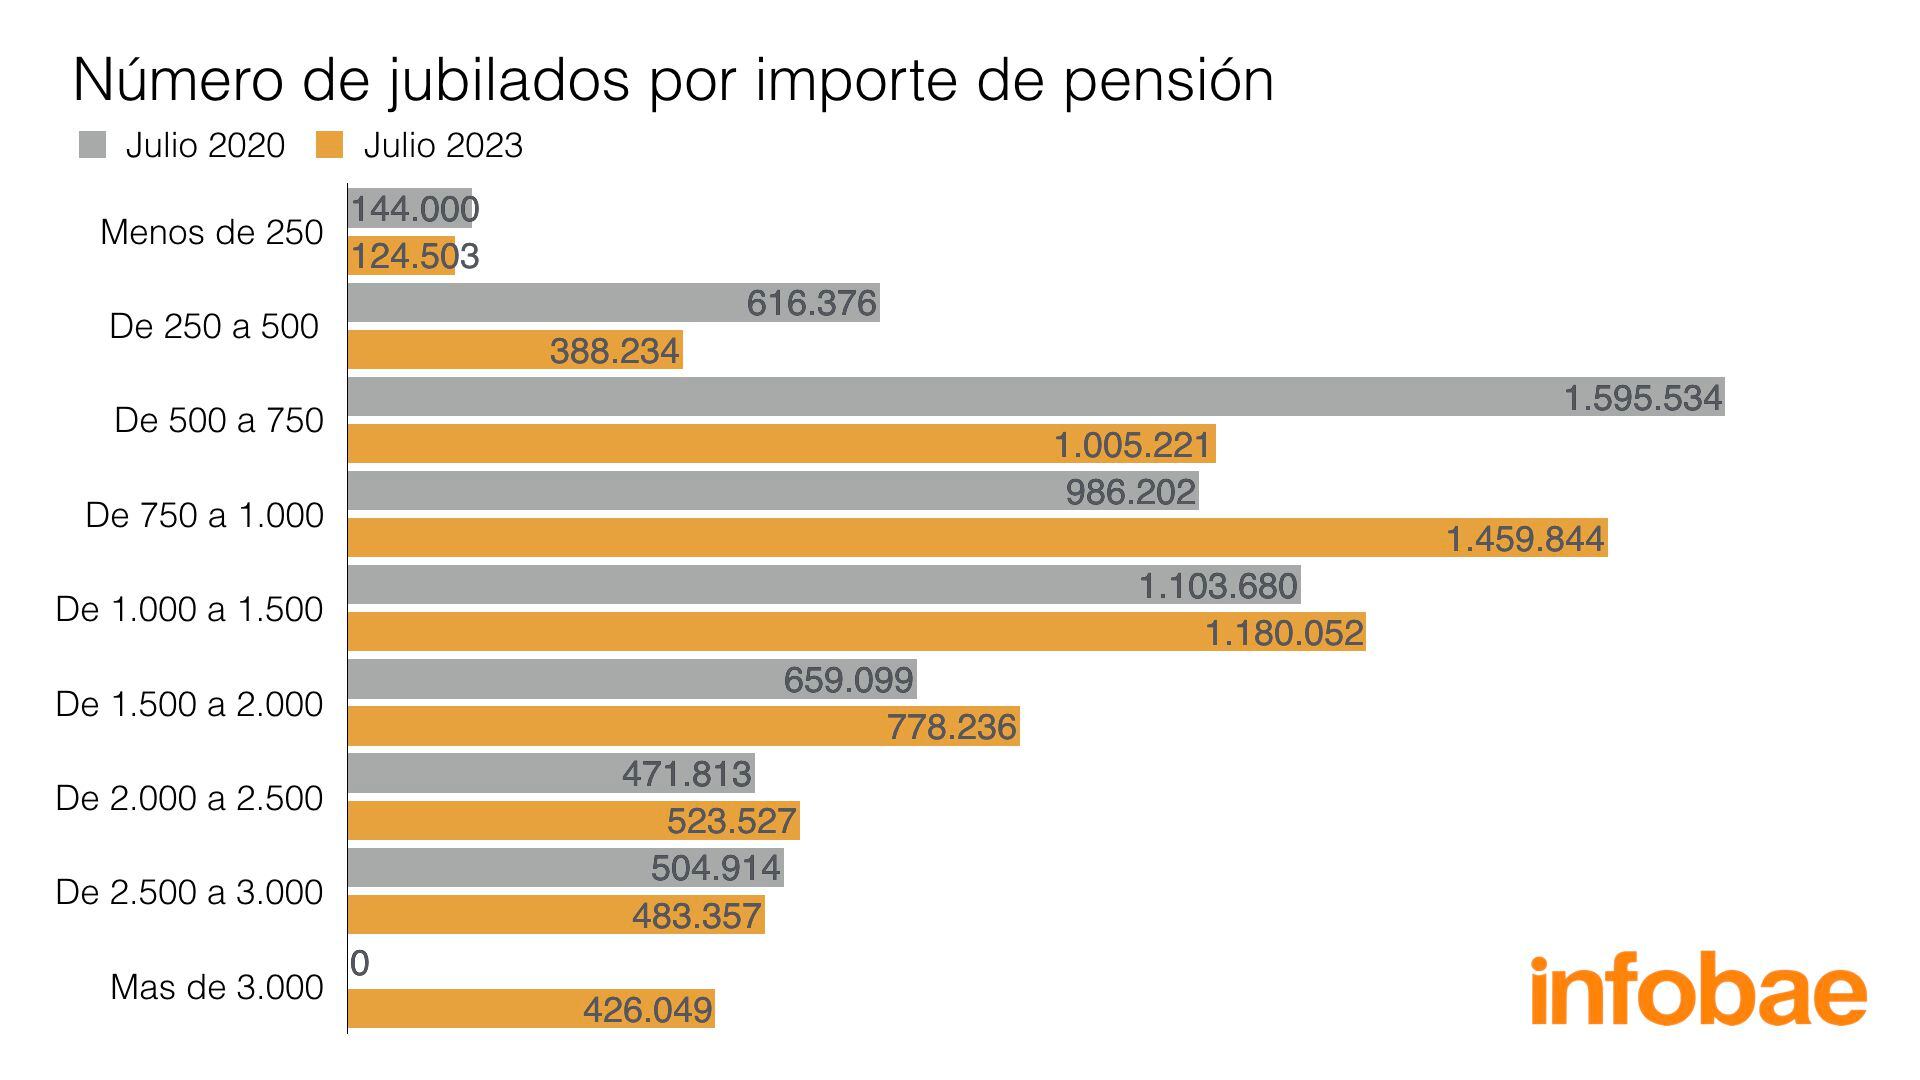 Il numero di pensionati, in base all'importo della pensione